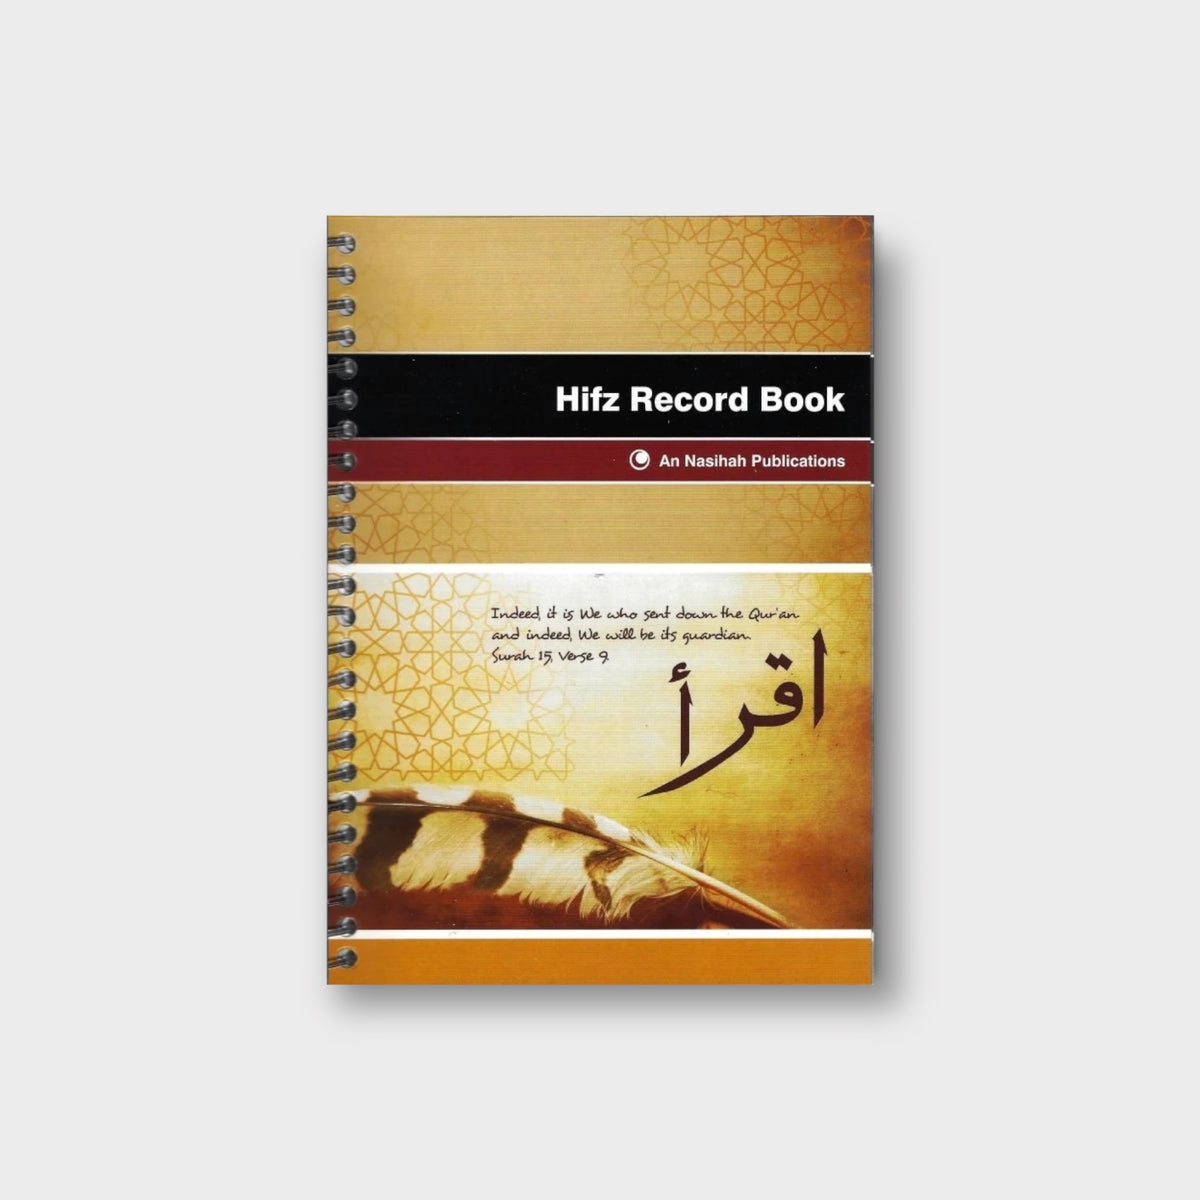 Hifz Record Book